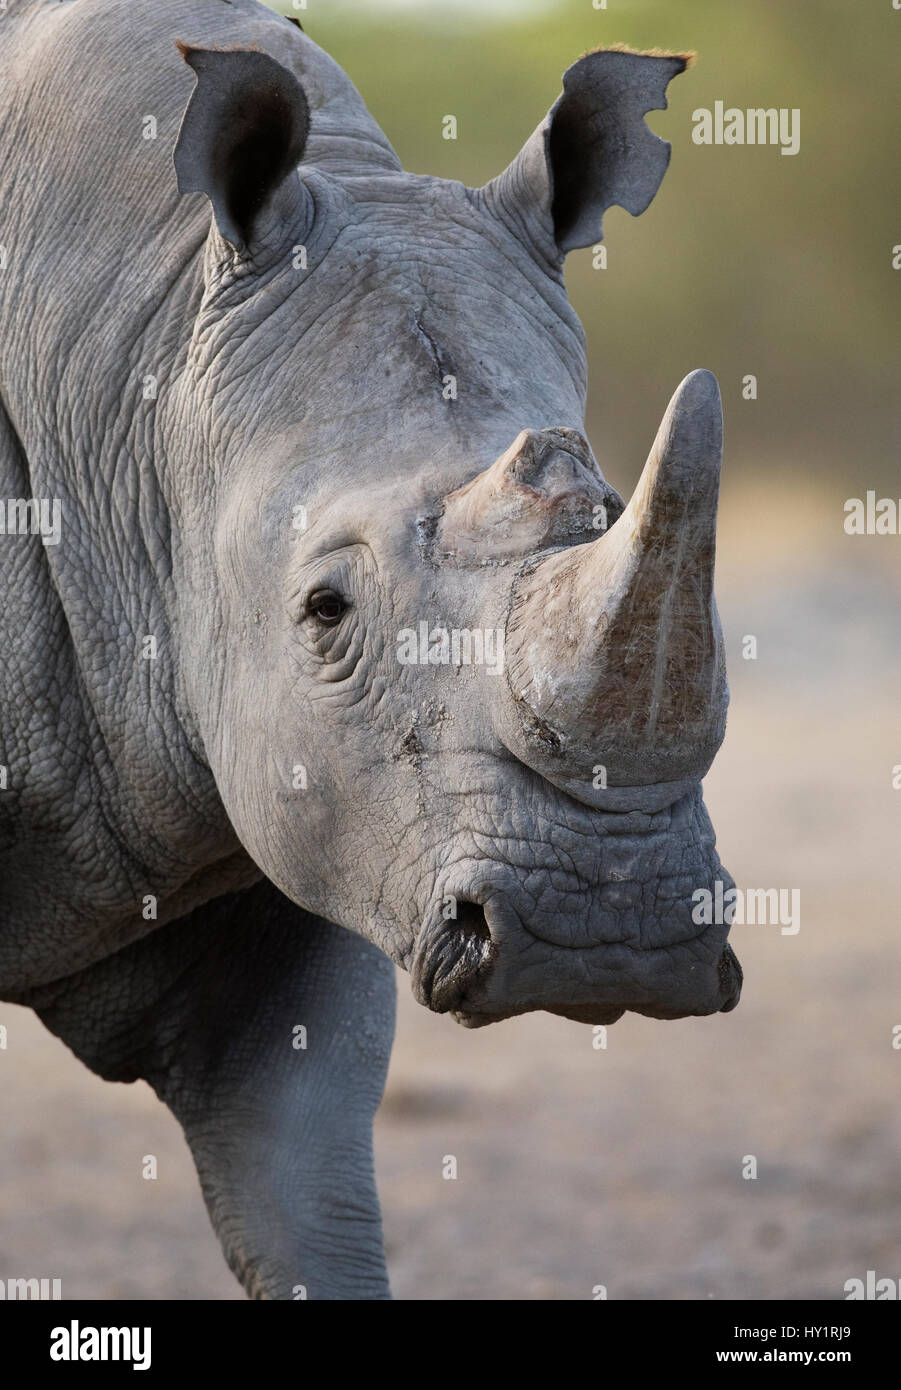 Le rhinocéros blanc (Ceratotherium simum) portrait, Etosha National Park, Namibie. Janvier. Banque D'Images